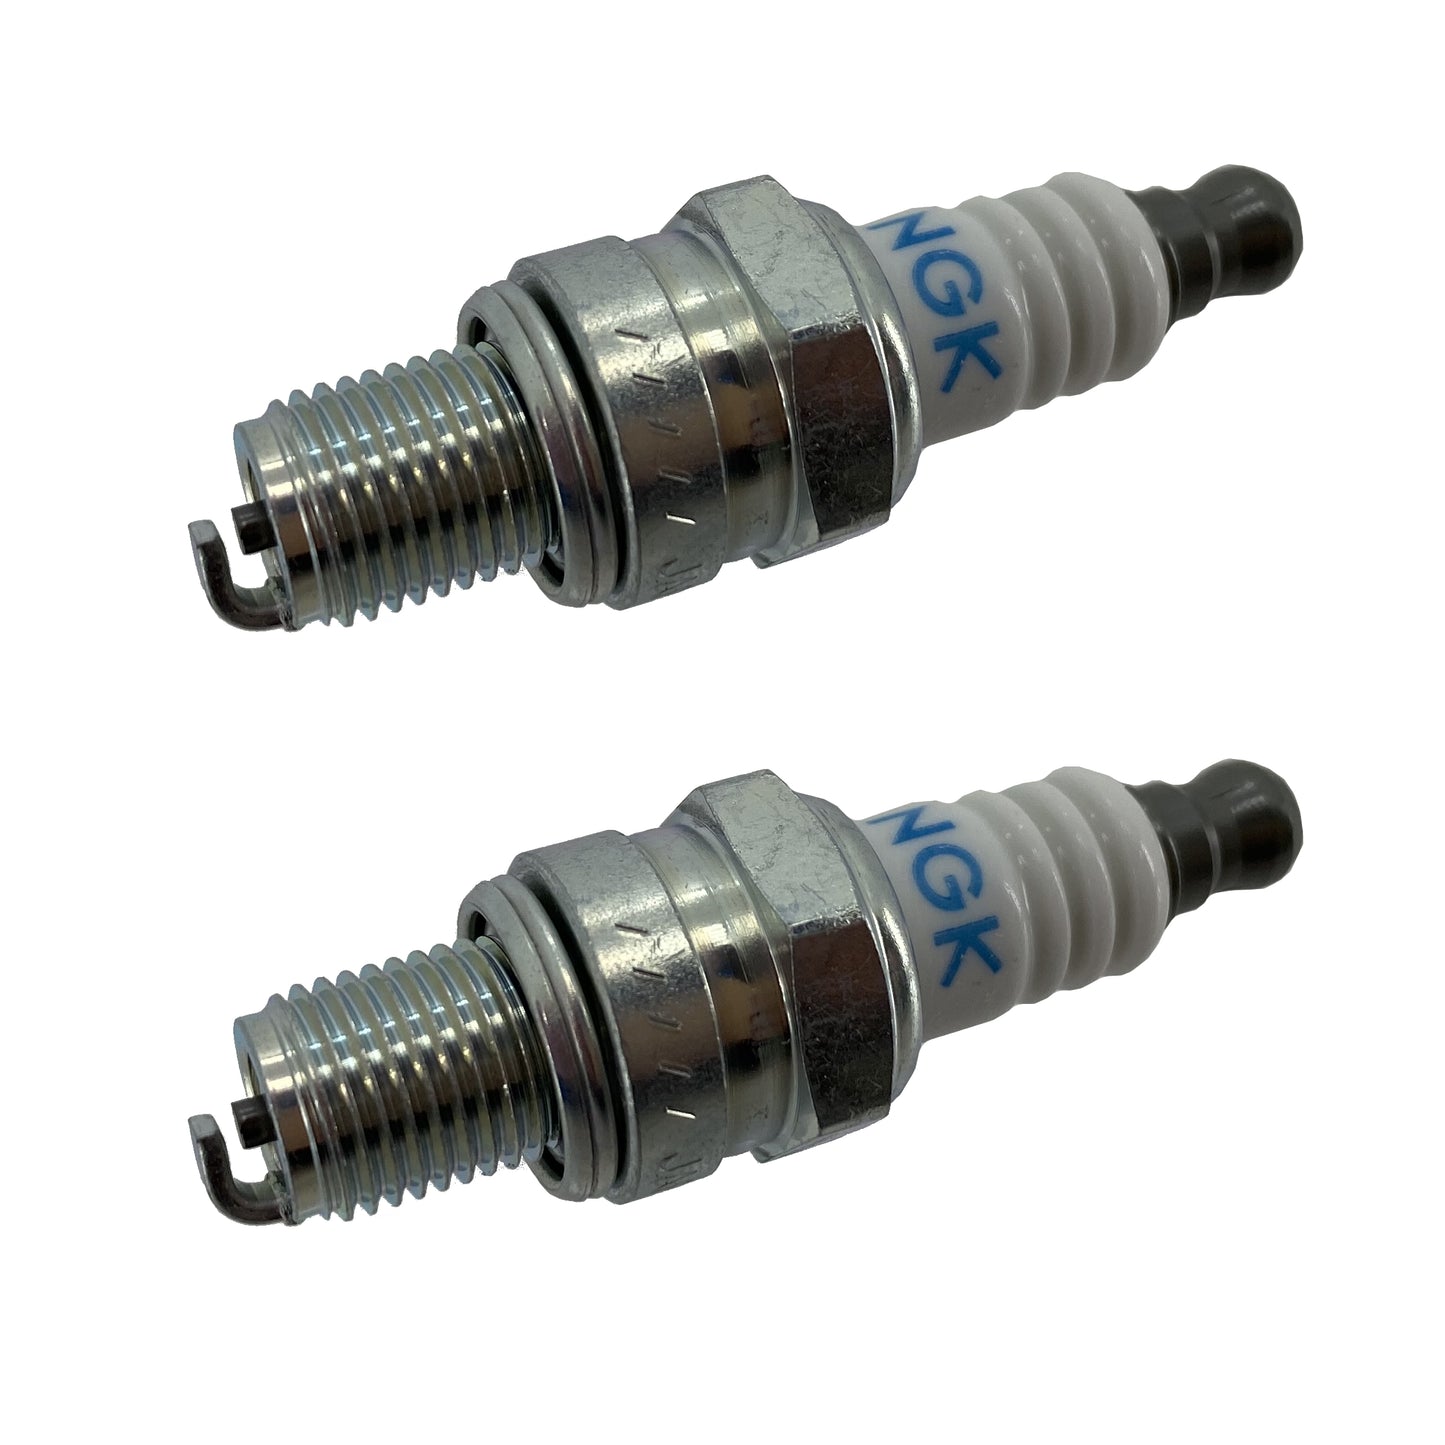 Honda Original Equipment Spark Plug (Cmr5H) 2 Pack - 31915-Z0H-003